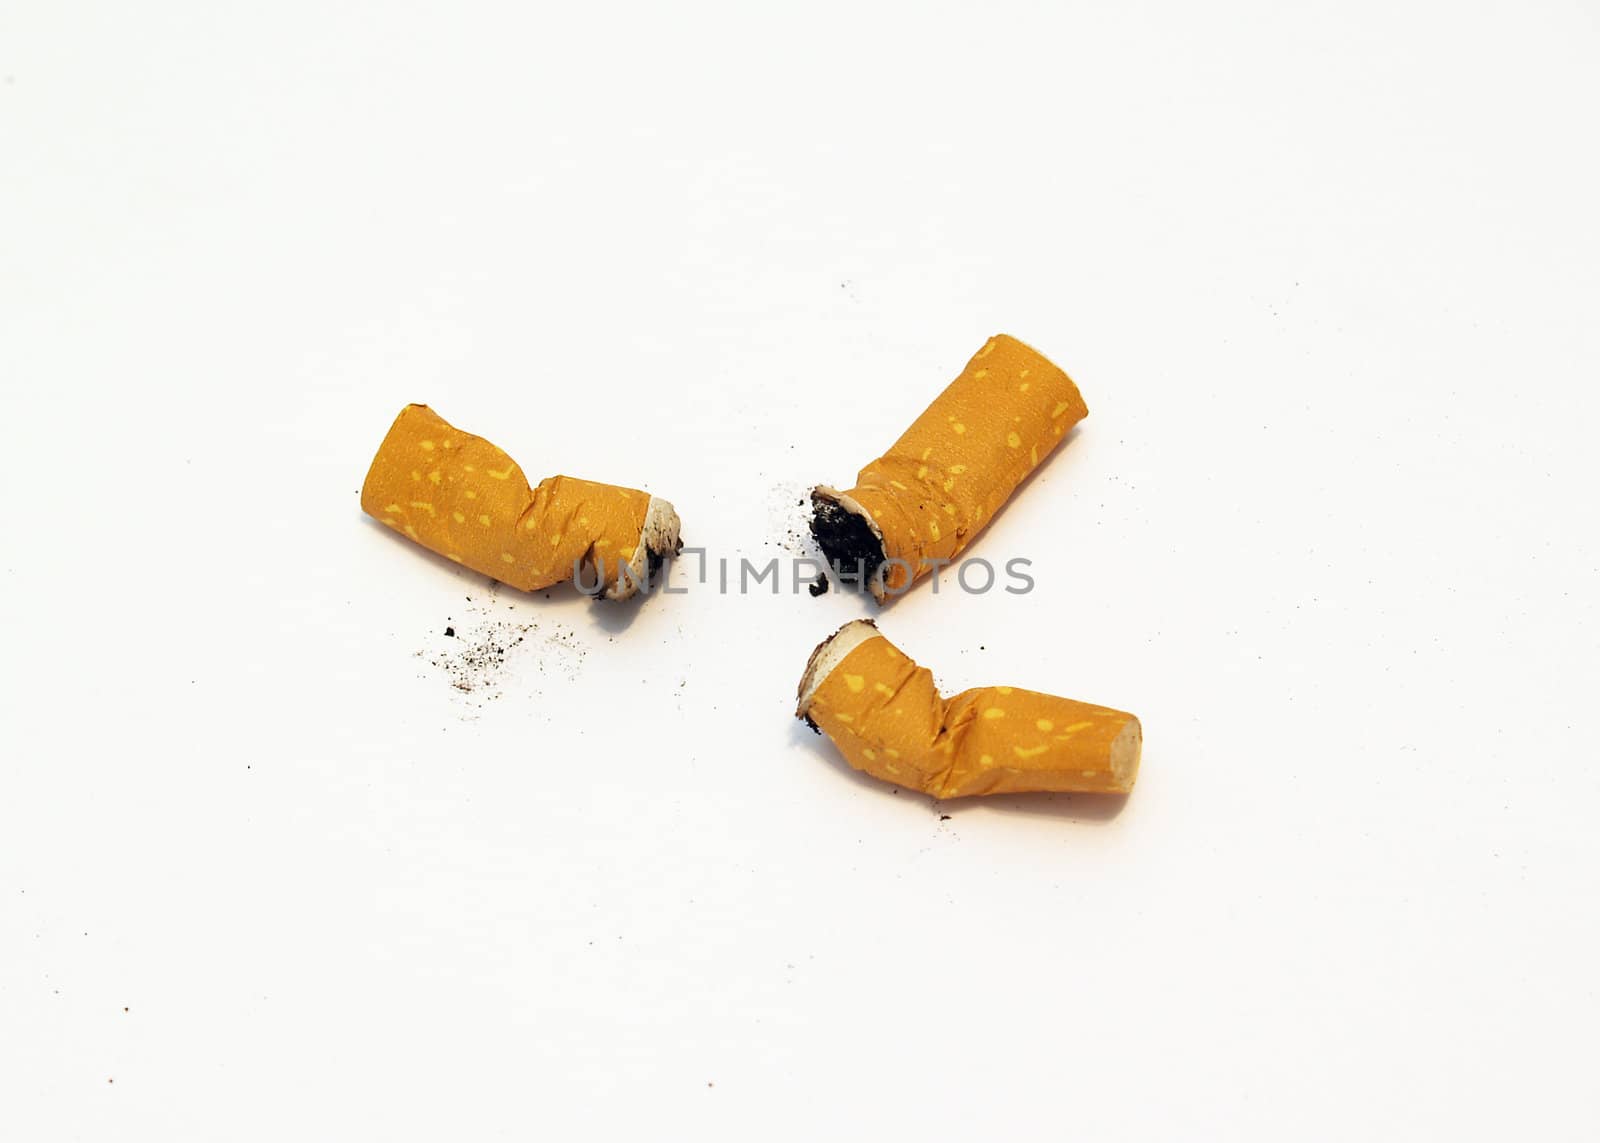 cigarette butts